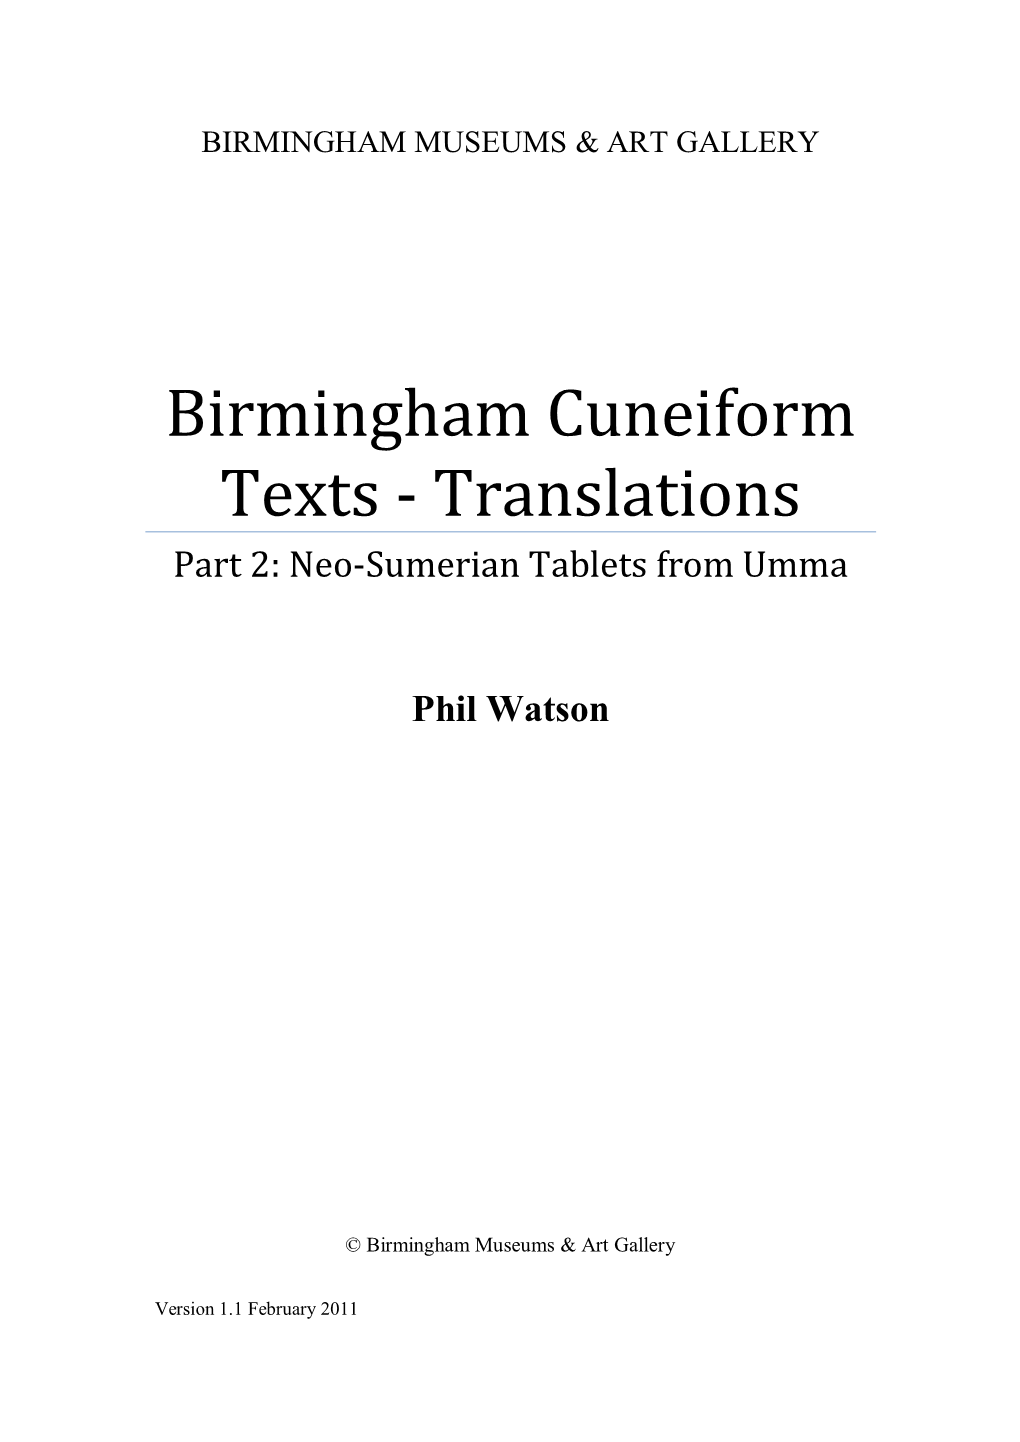 Birmingham Cuneiform Texts - Translations Part 2: Neo-Sumerian Tablets from Umma